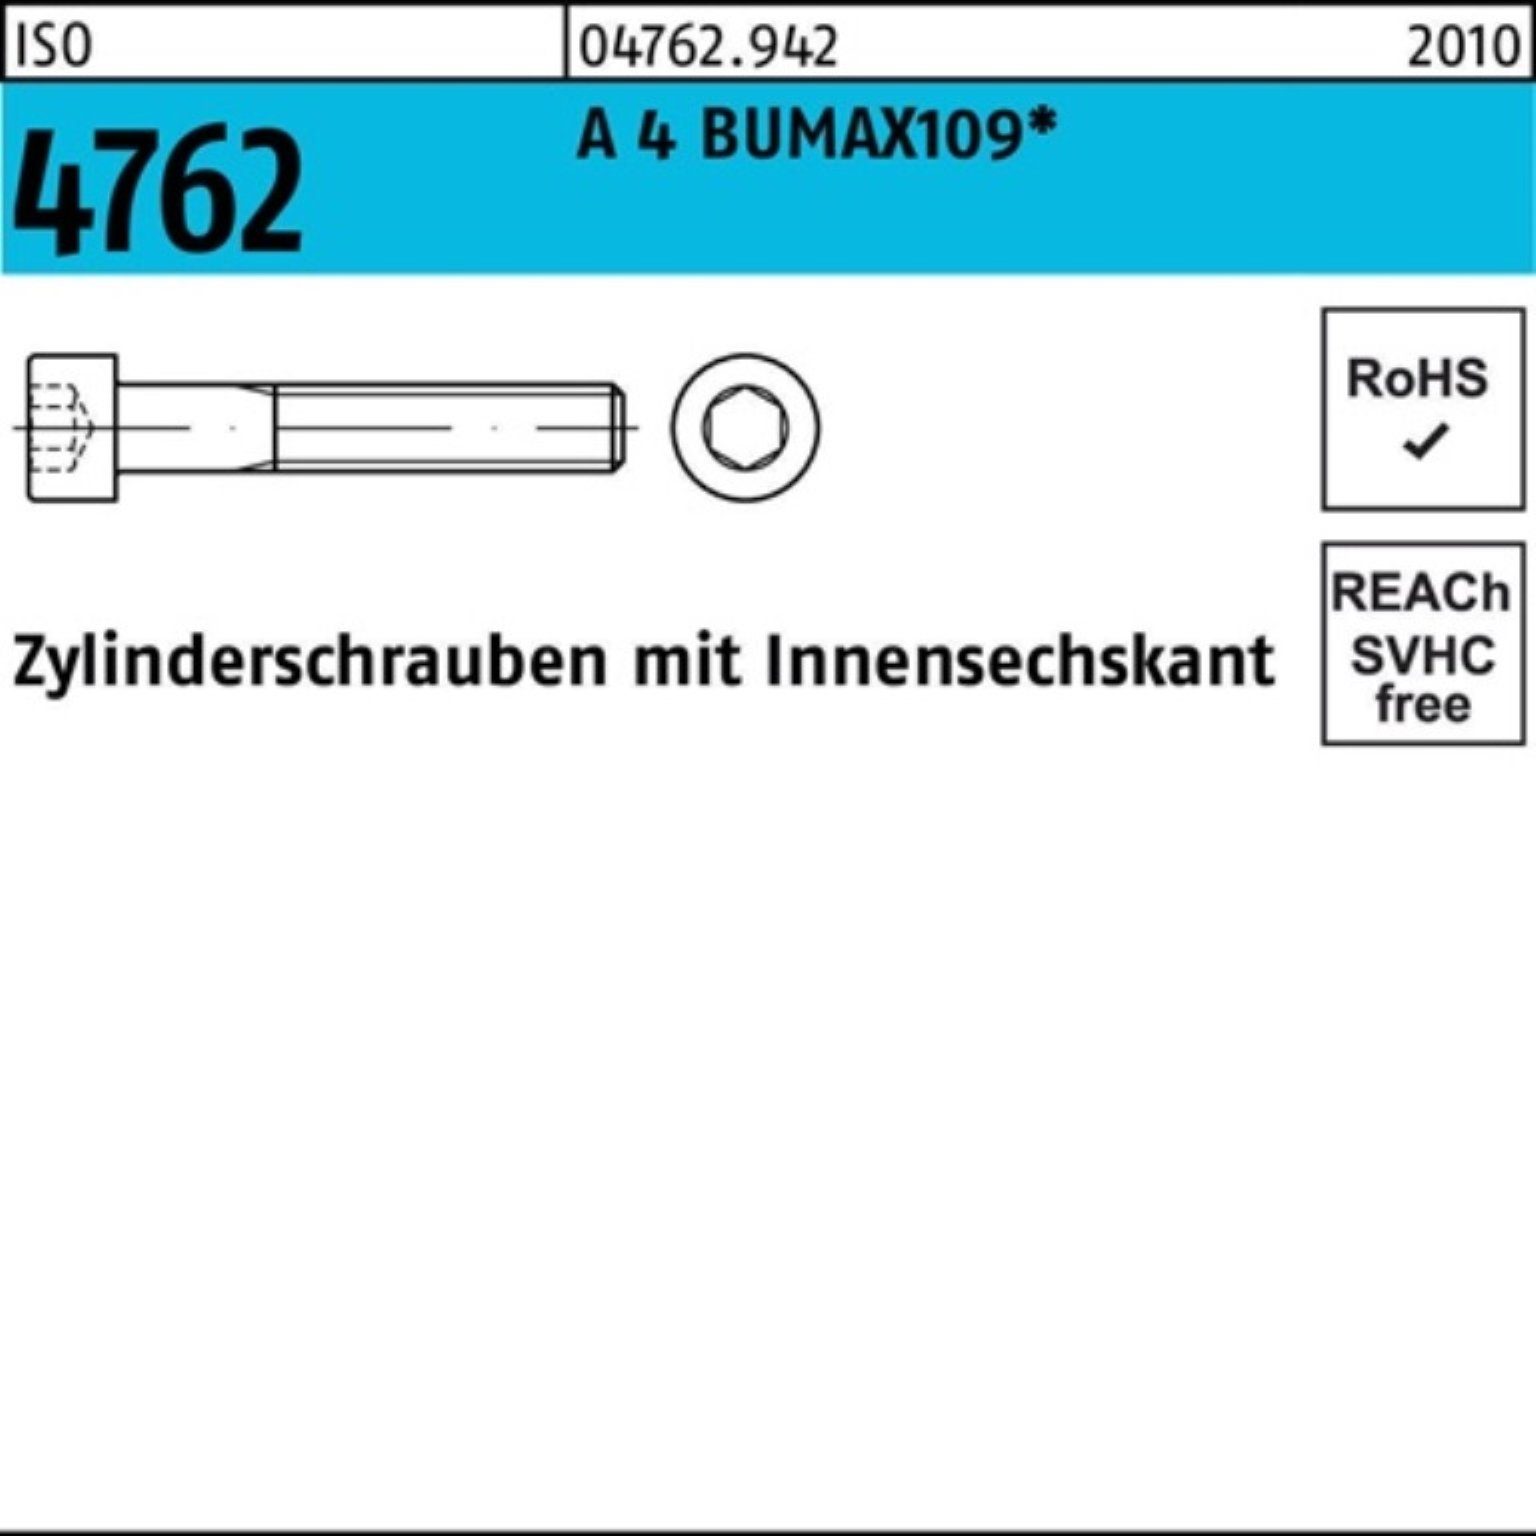 Bufab Zylinderschraube 100er Pack Zylinderschraube ISO 4762 Innen-6kt M6x 20 A 4 BUMAX109 100 | Schrauben